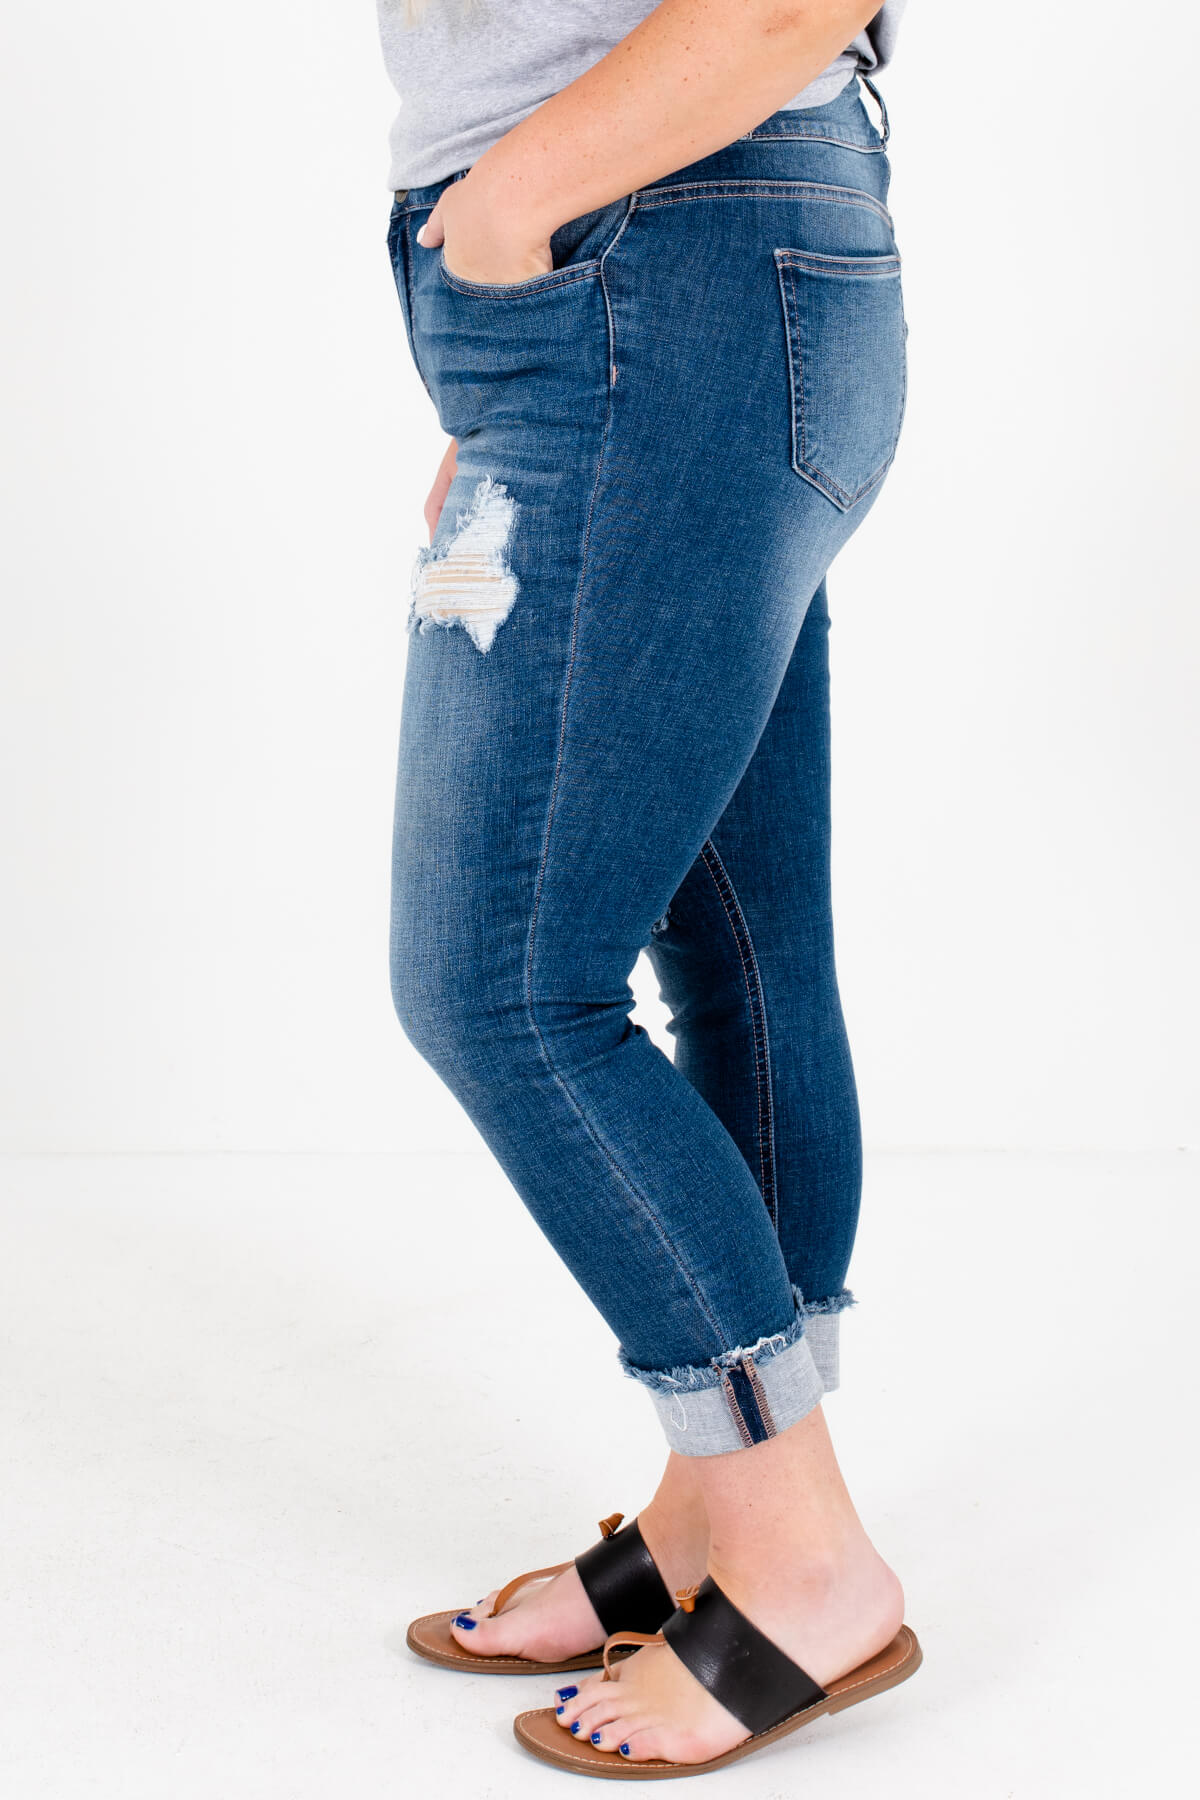 Medium Wash Blue Denim Boutique Plus Size Jeans with Pockets